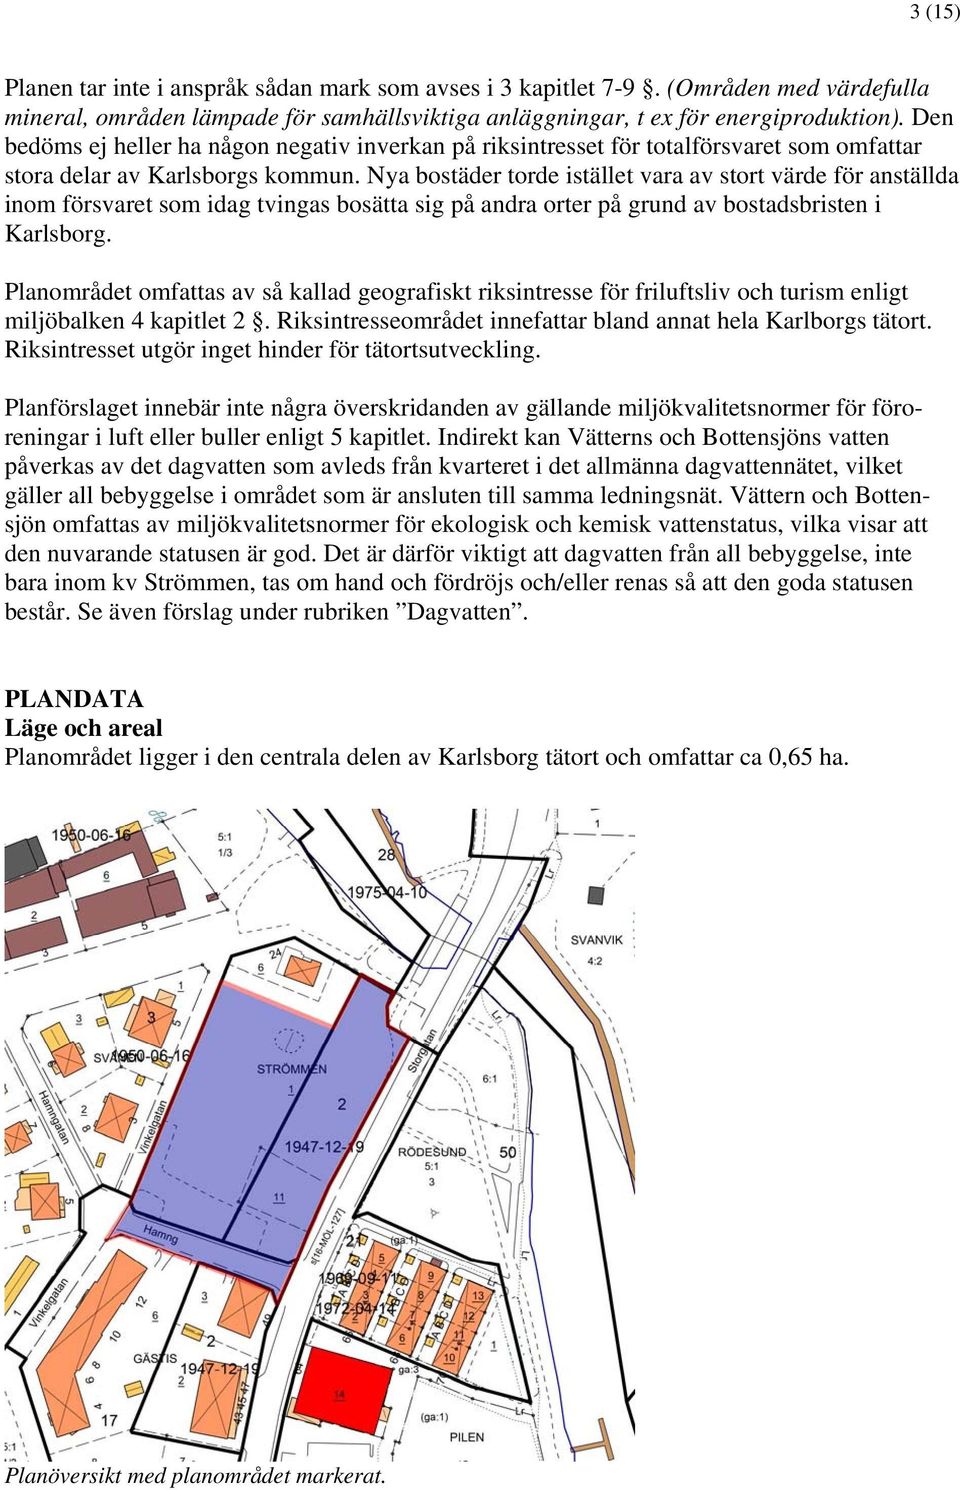 Nya bostäder torde istället vara av stort värde för anställda inom försvaret som idag tvingas bosätta sig på andra orter på grund av bostadsbristen i Karlsborg.